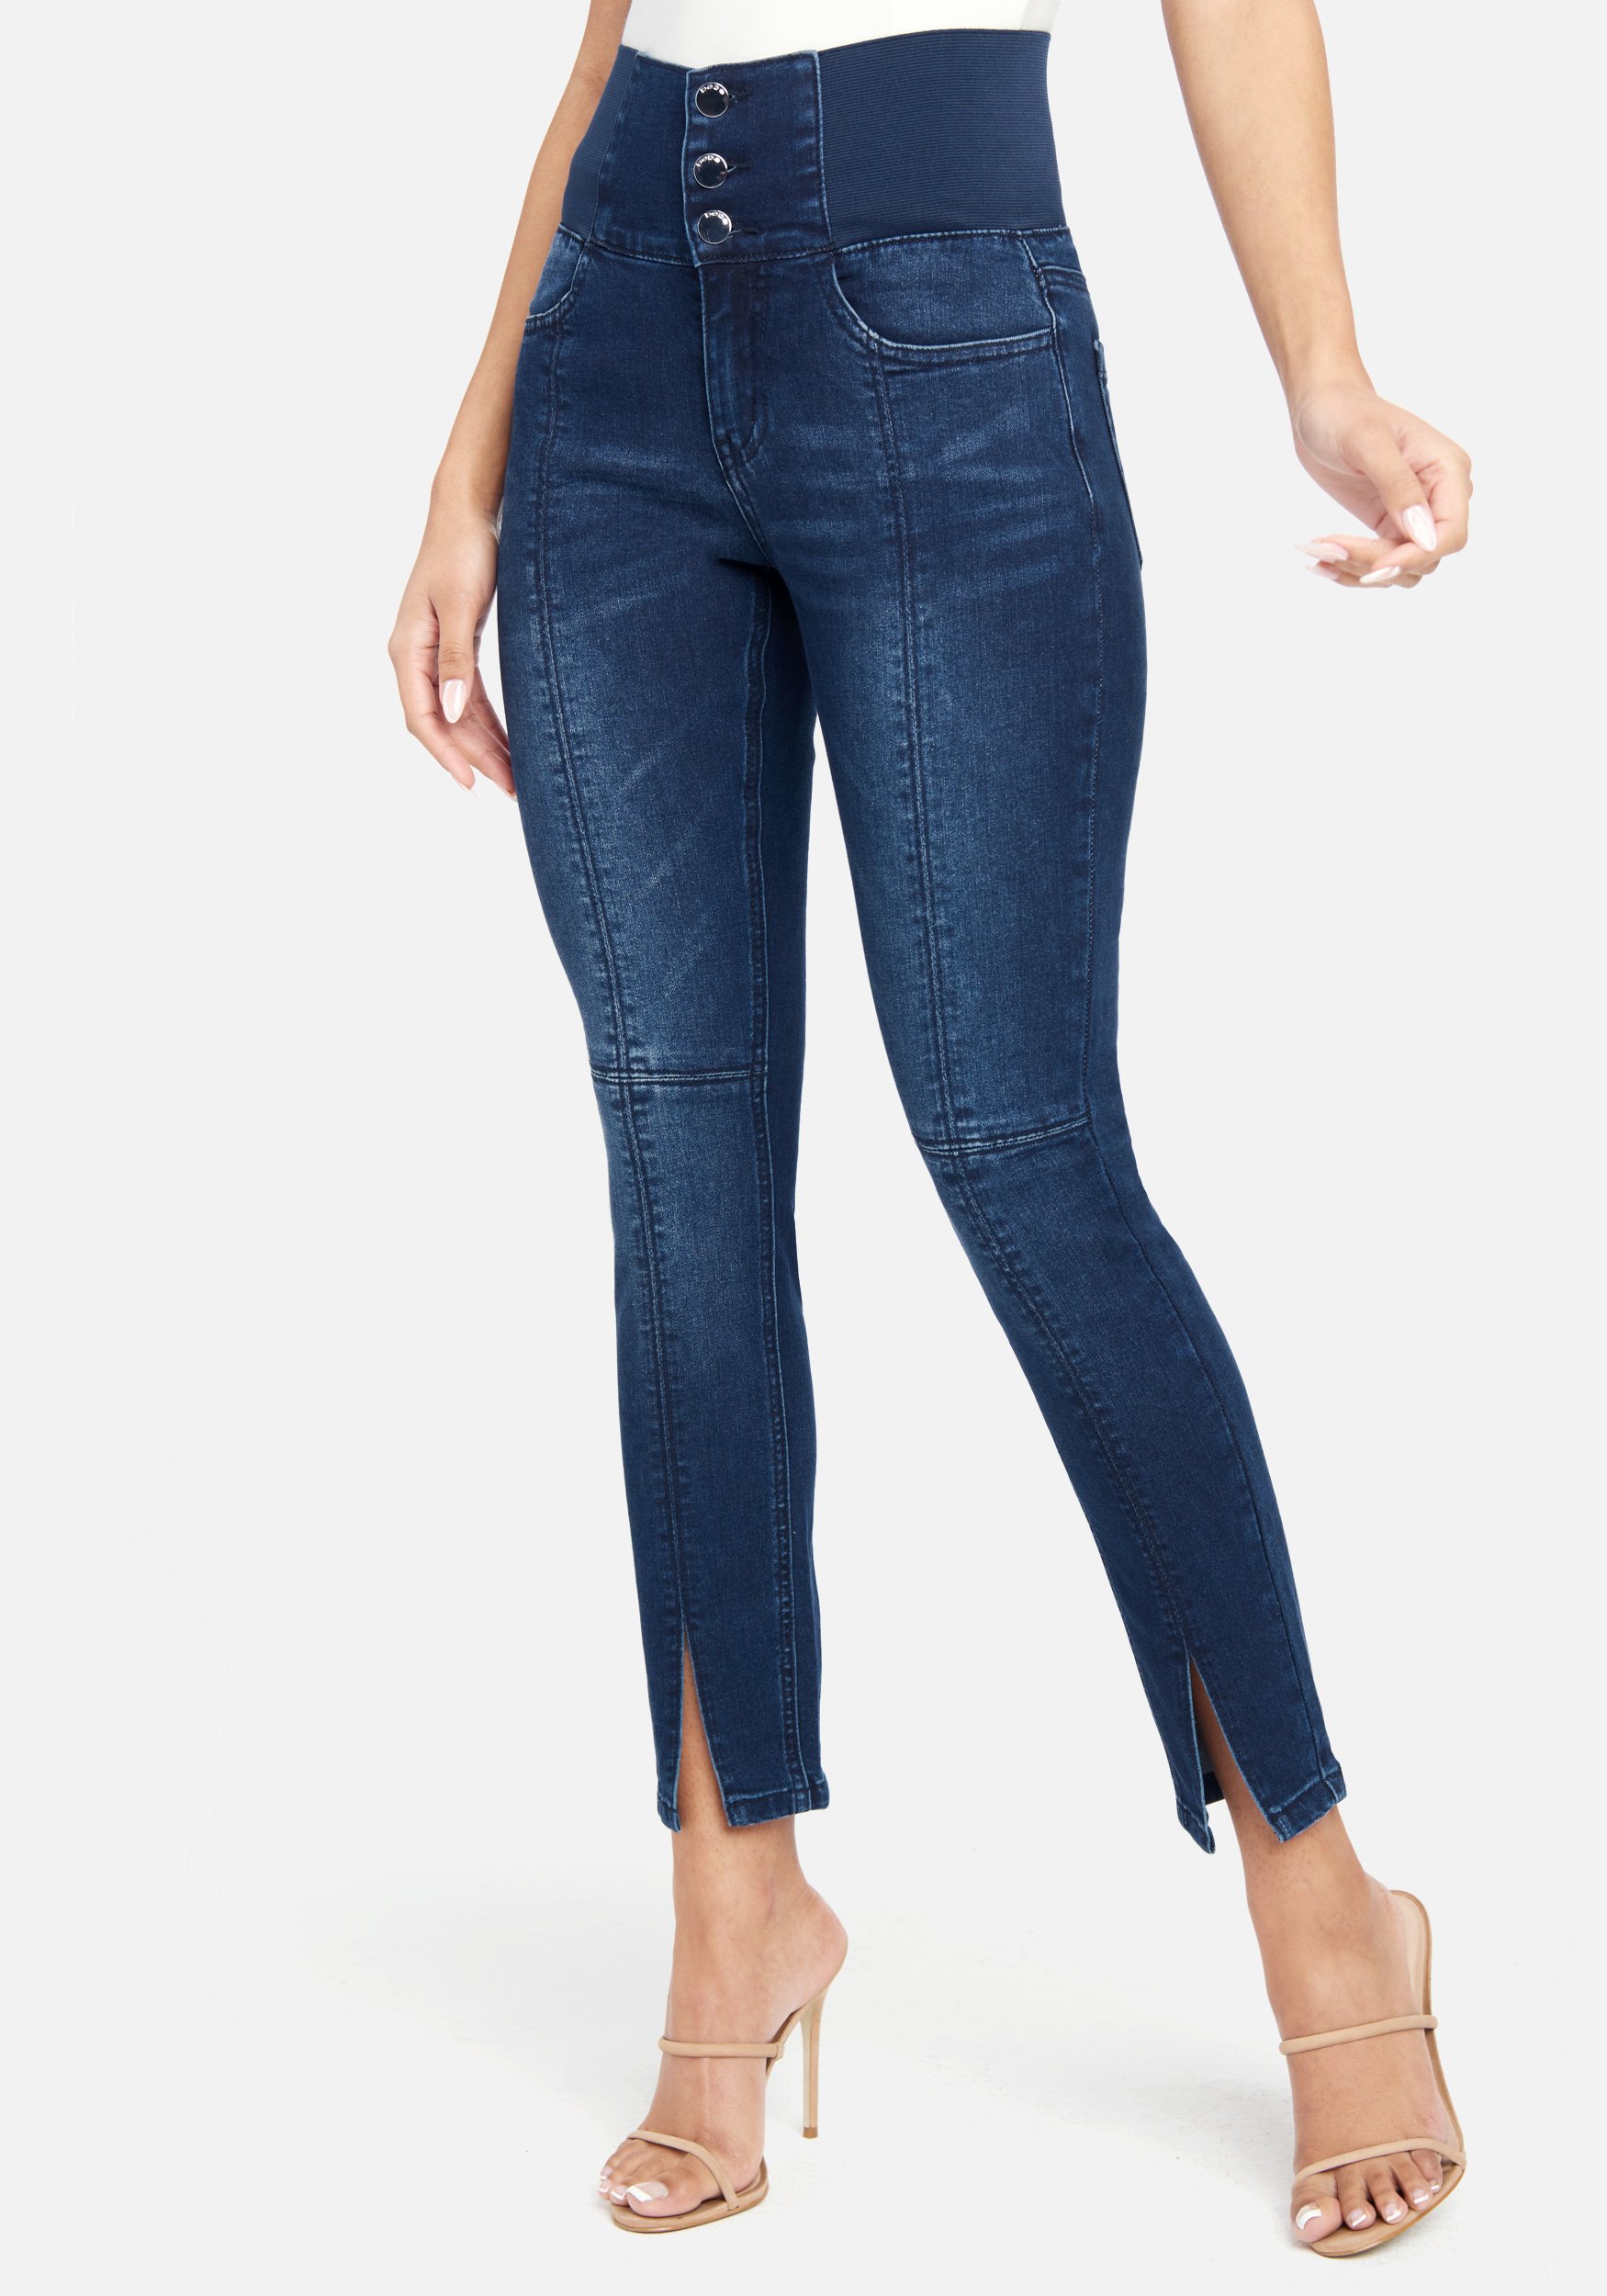 Bebe Women's High Waisted Elastic Waist Jeans, Size 29 in Dark Indigo Wash Cotton/Spandex